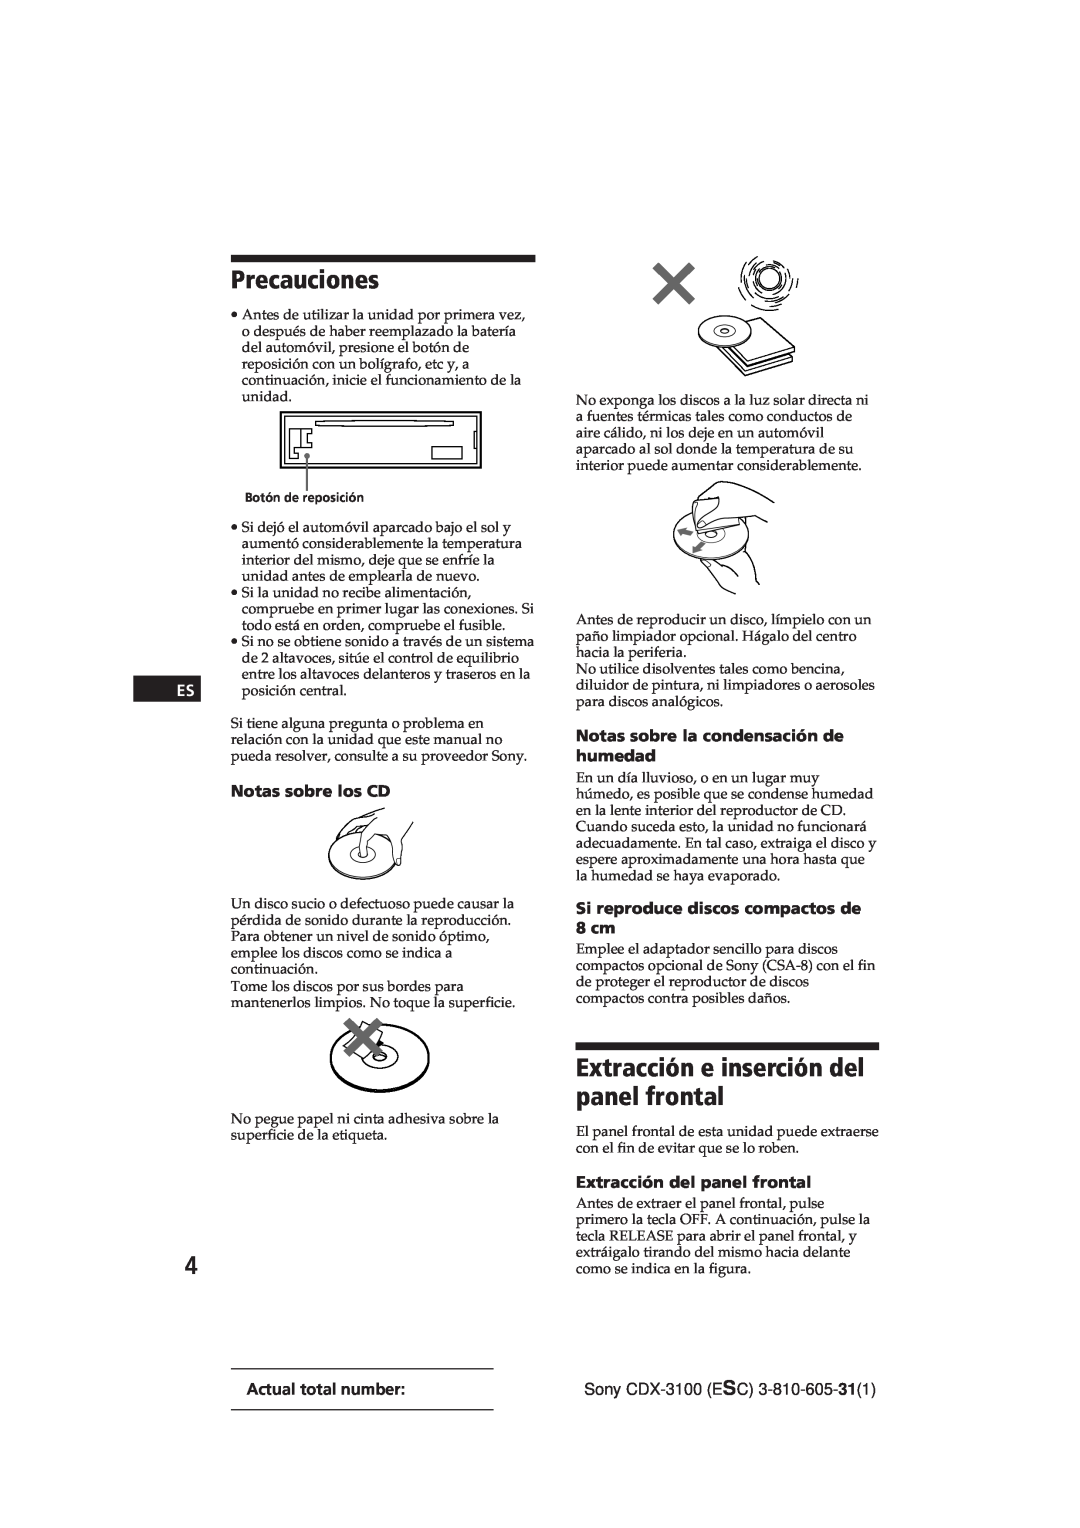 Sony Model CDX-3100 manual Precauciones, Extracción e inserción del panel frontal, Notas sobre los CD, Sony CDX-3100ESC 